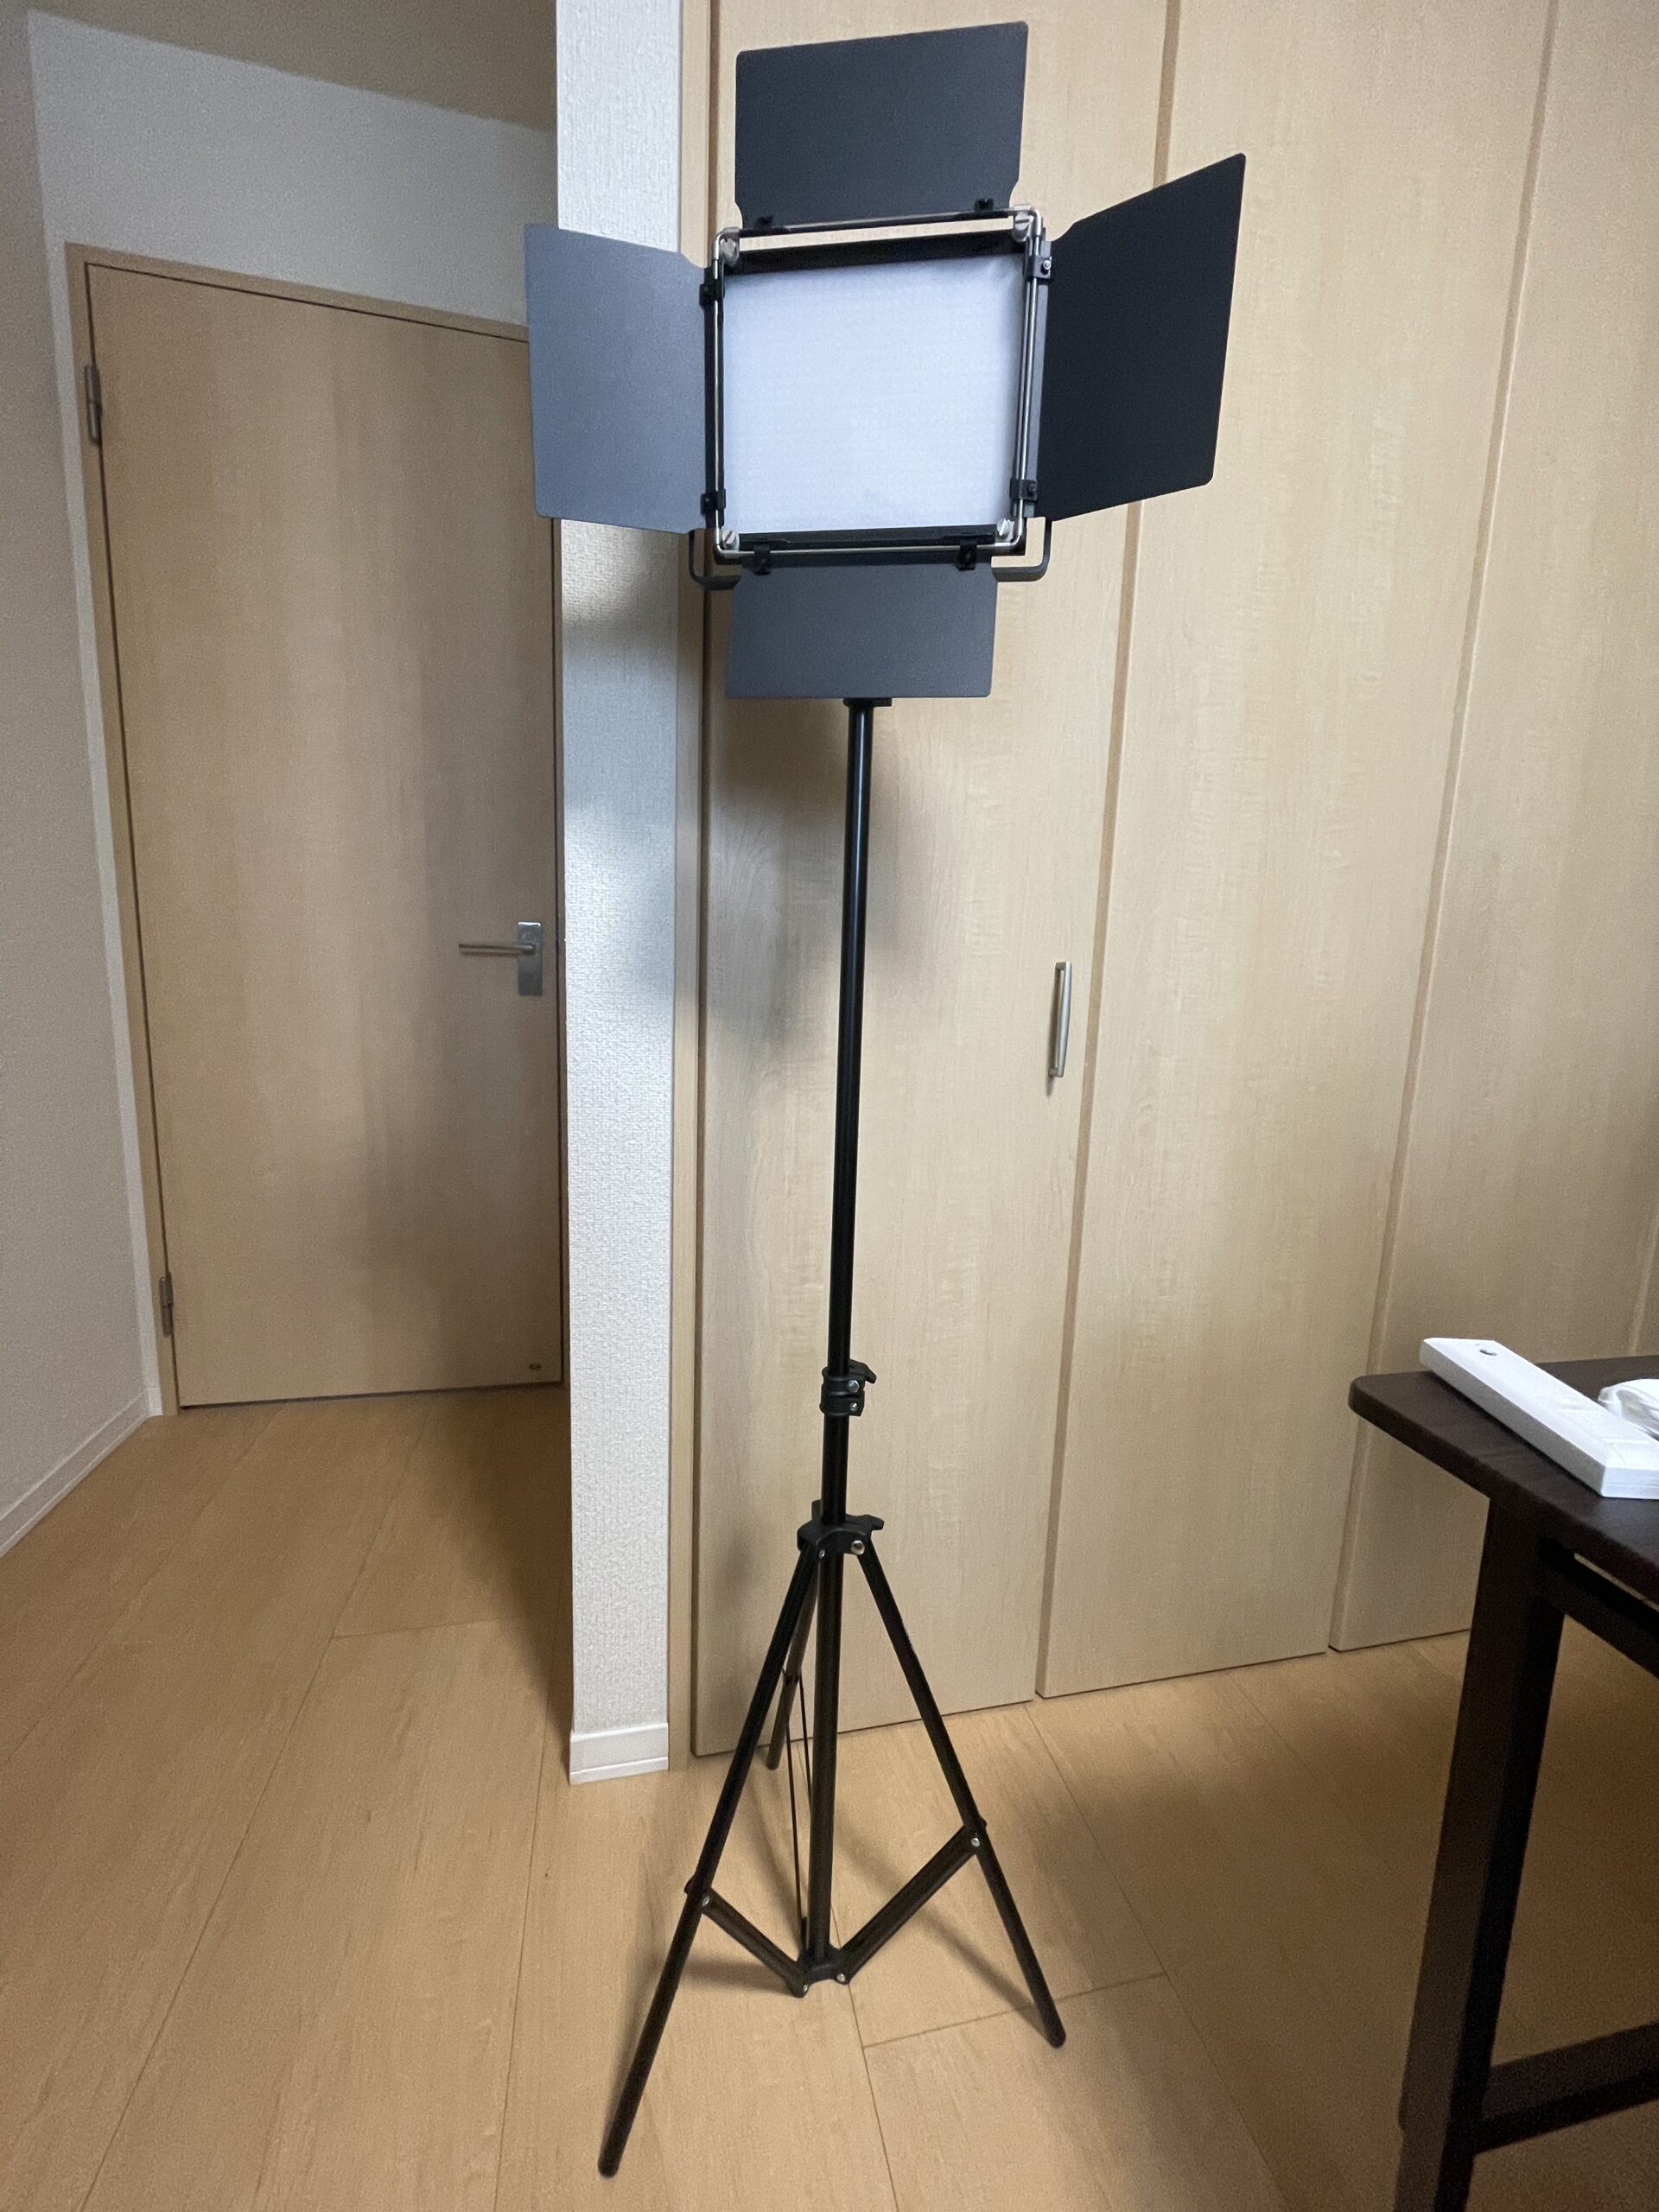 ブログ用の写真クオリティを上げるために「Neewer 660 LEDビデオライト 